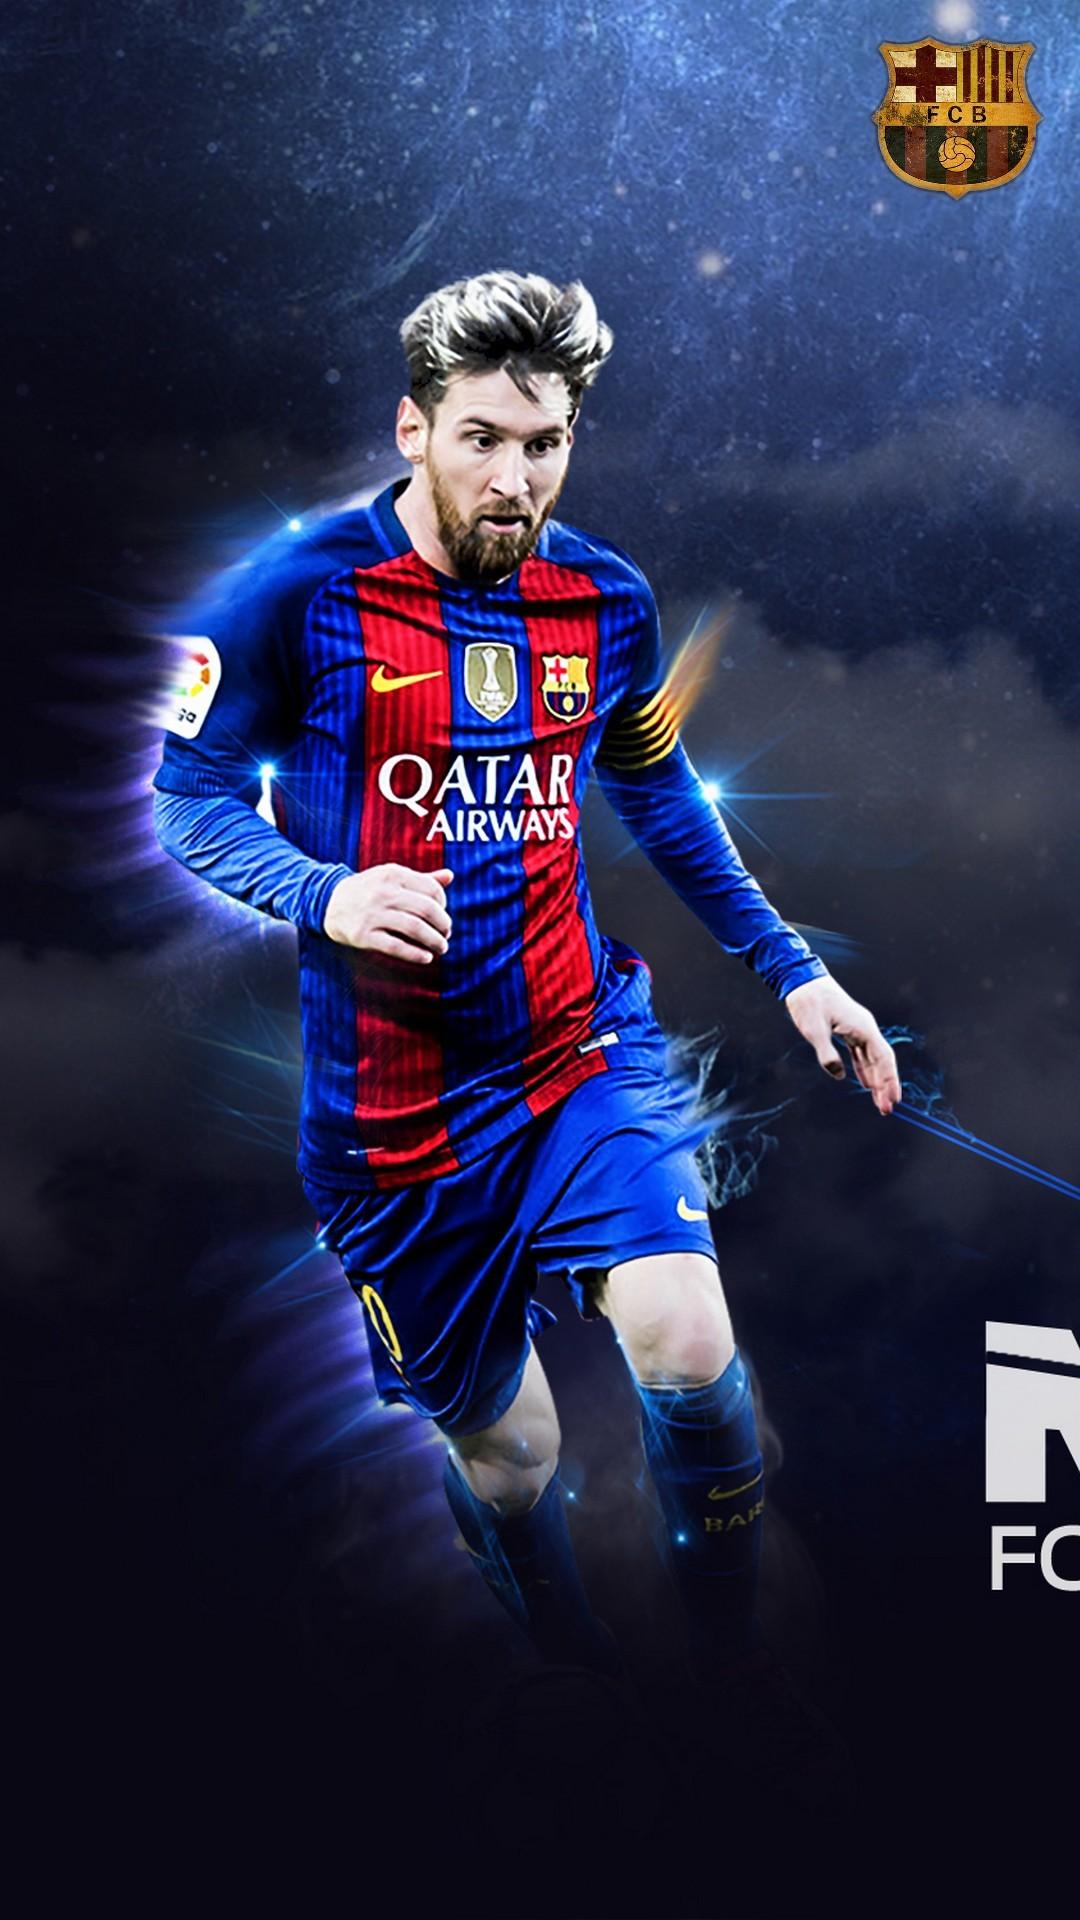 Hãy truy cập vào Wallpaper Cave để tìm những hình nền Messi đẹp nhất dành cho iPhone 4K. Bạn sẽ rất thích mỗi hình nền với sự kết hợp tuyệt vời giữa sắc đỏ-blau-grana của CLB Barcelona và hình ảnh siêu sao Messi trên sân cỏ.